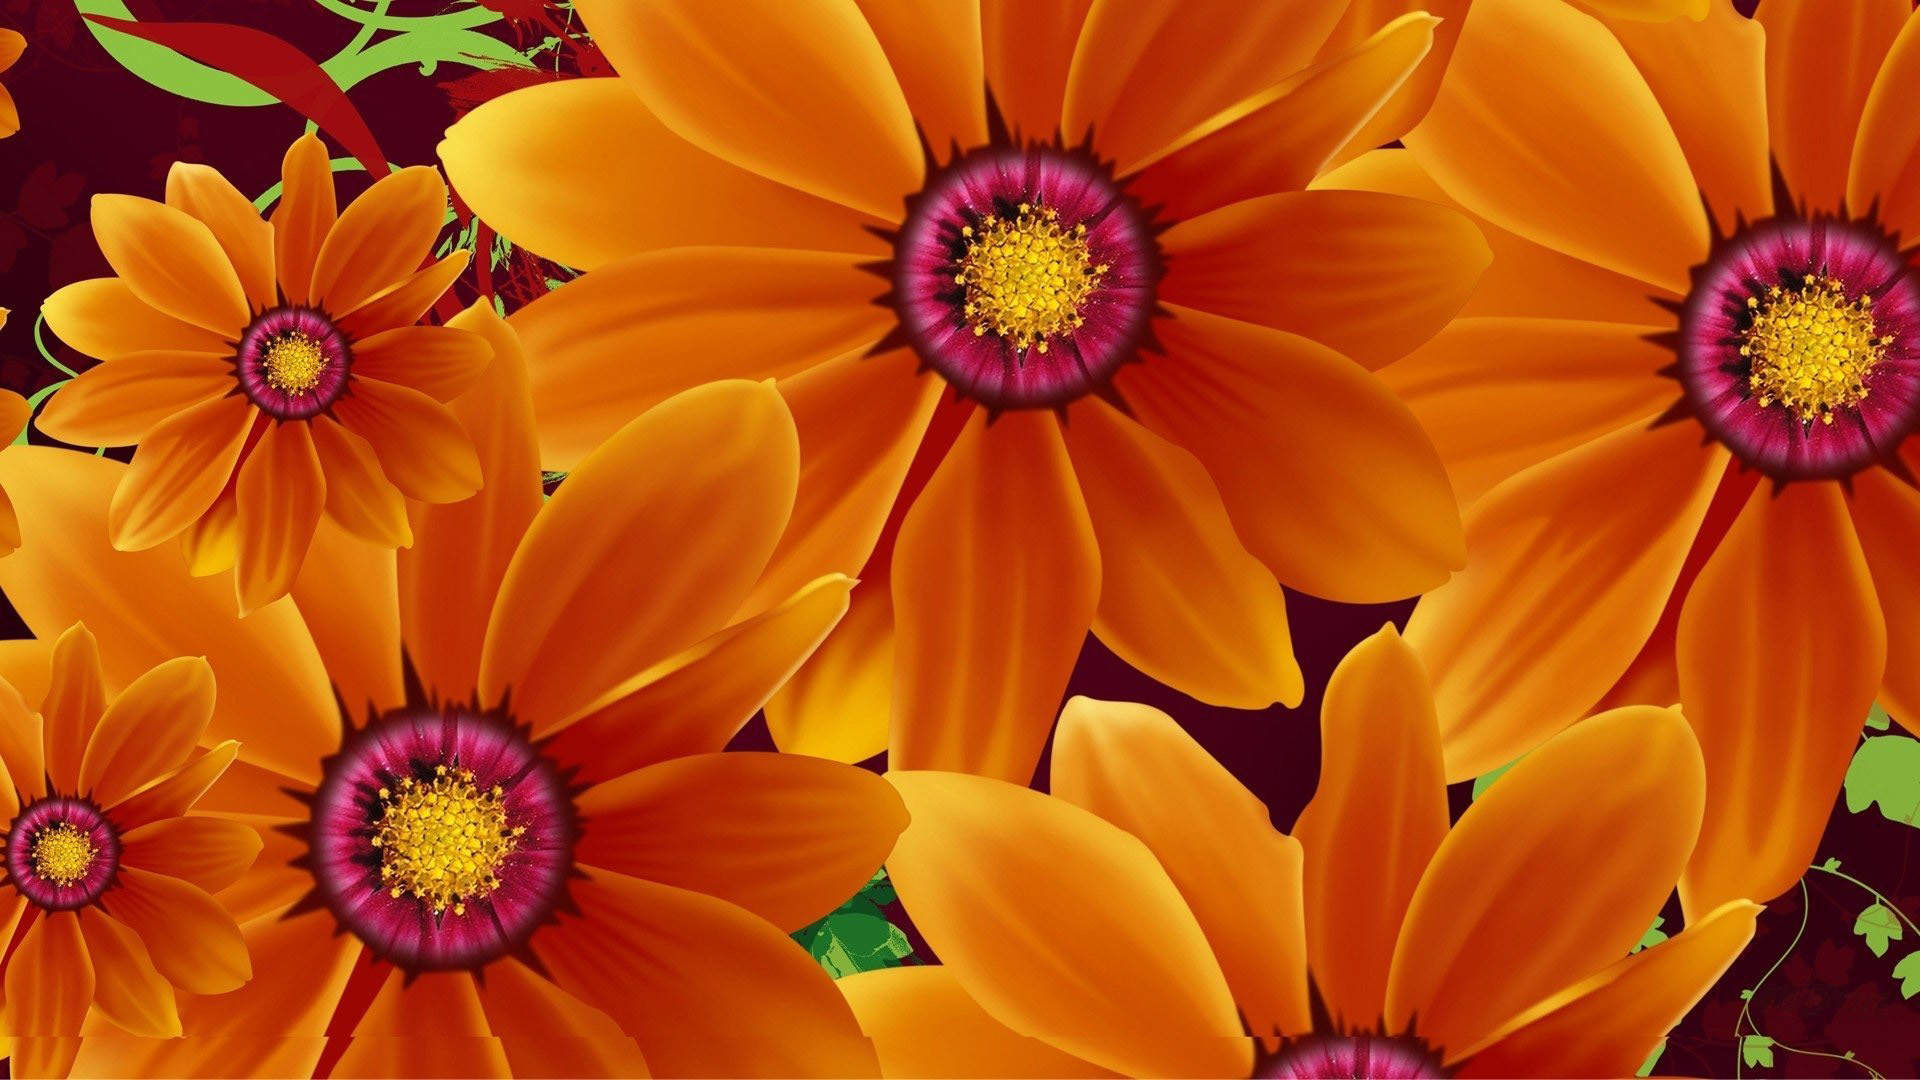 sfondi hd per cellulari 1920x1080 da scaricare,fiore,petalo,arancia,margherita africana,giallo